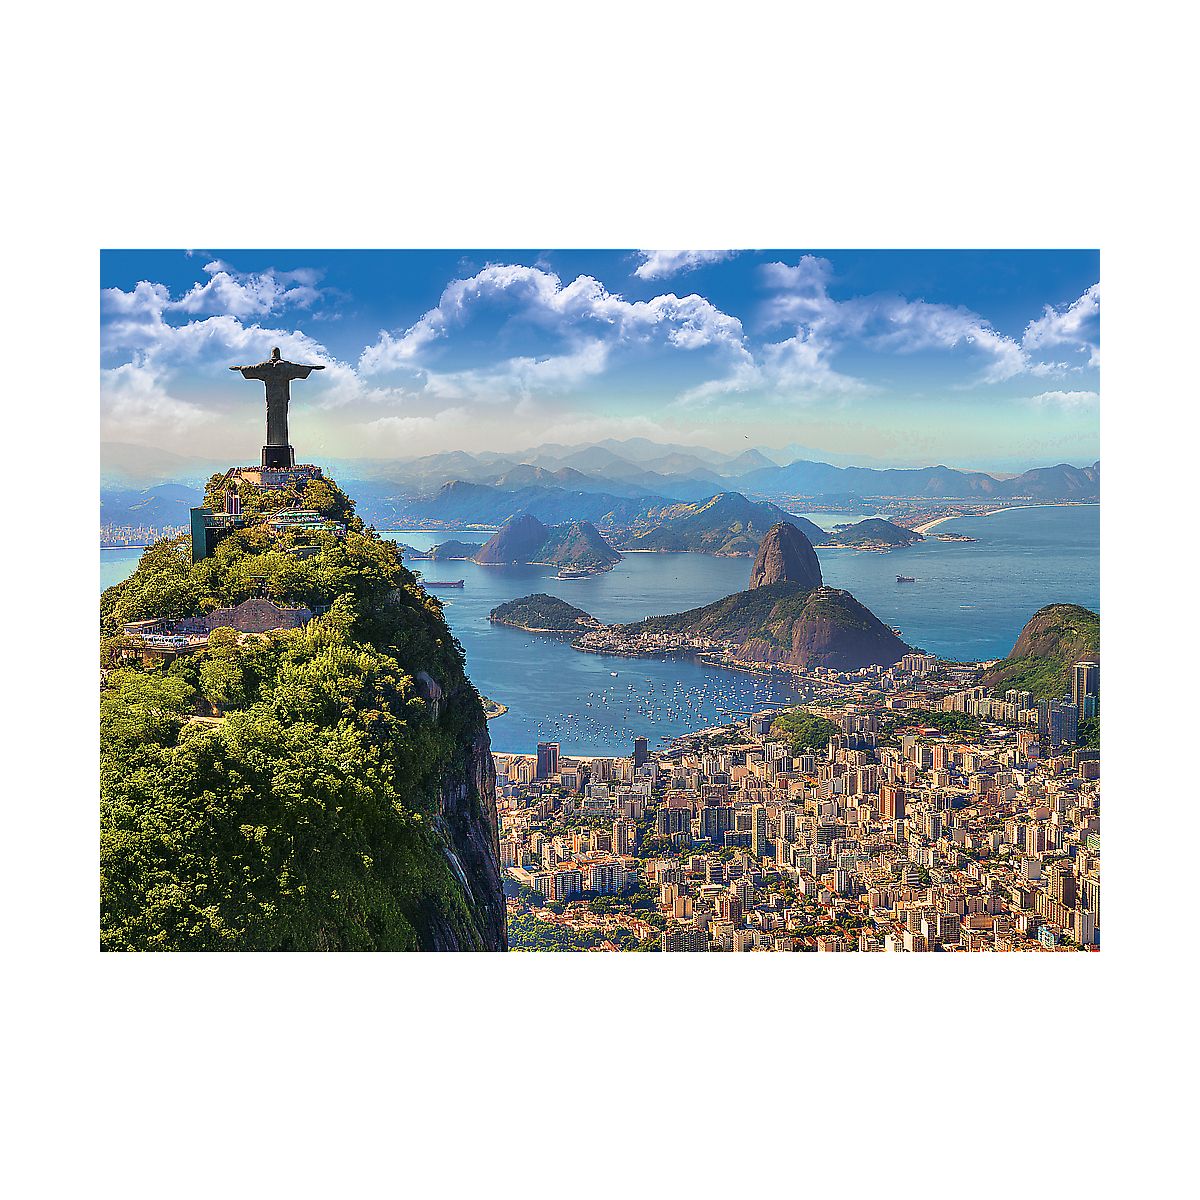 Puzzle Trefl 1000 Rio de Janeiro 1000 el. (10405)